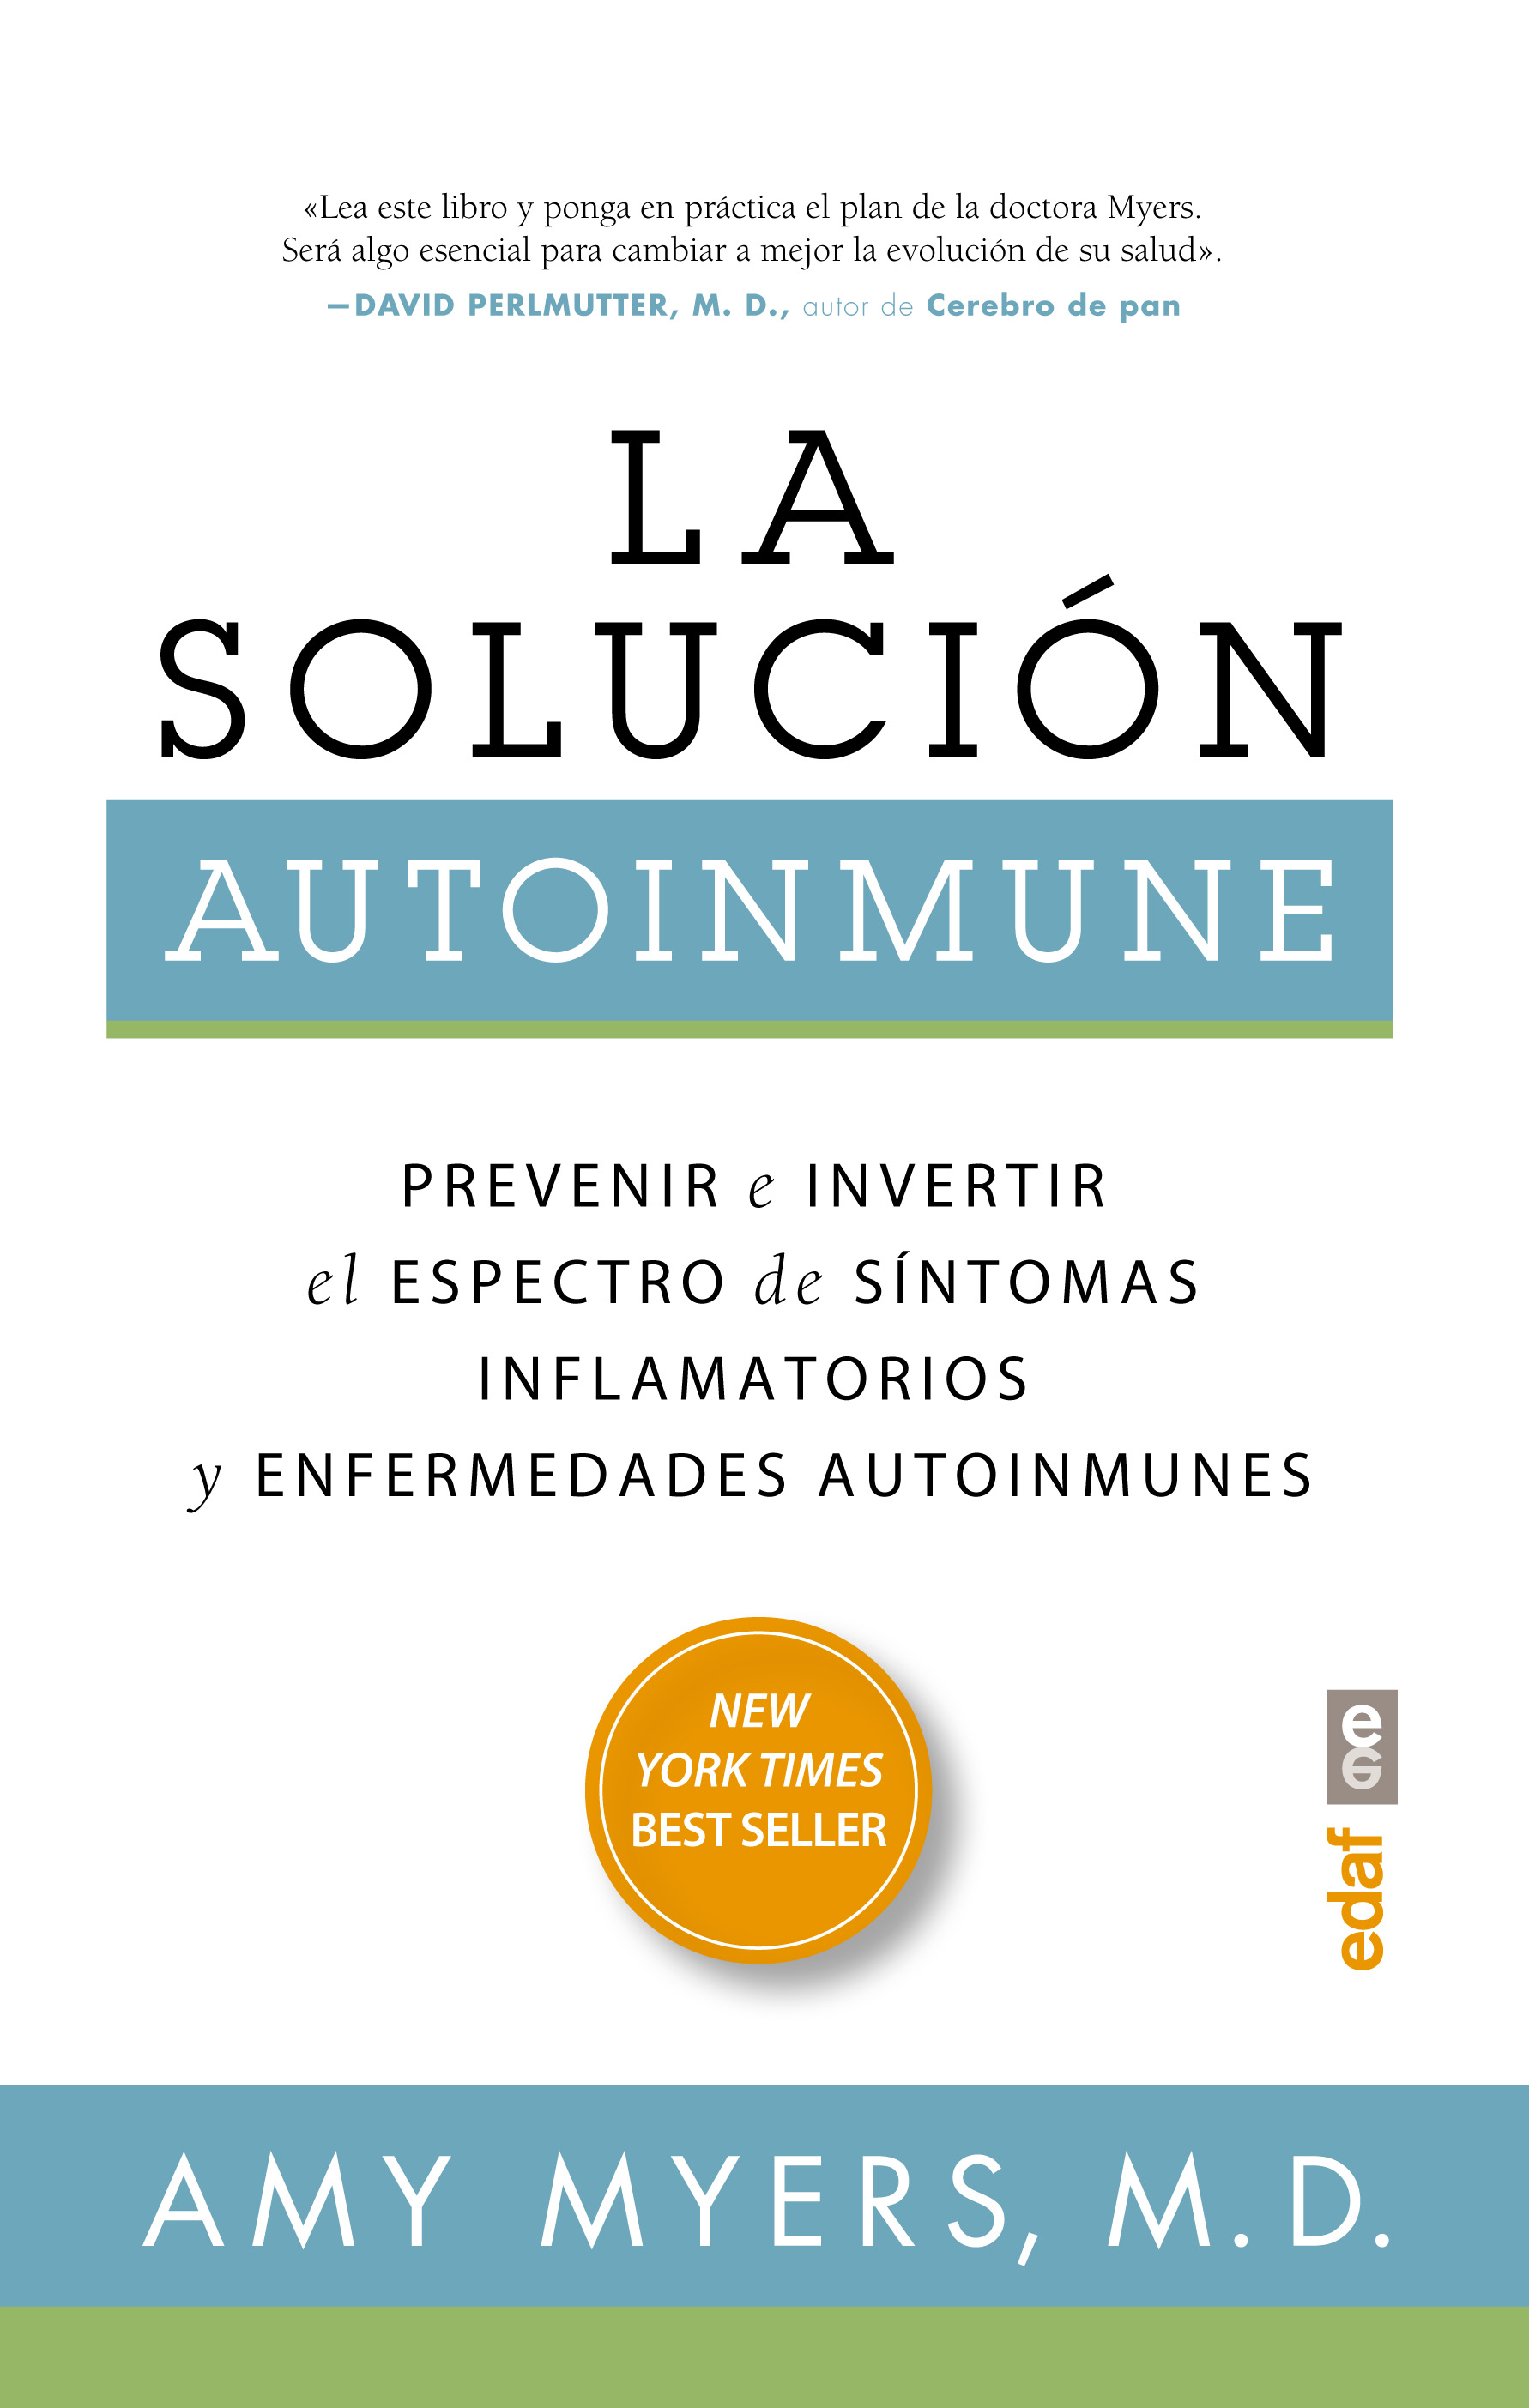 La solución autoinmune   «Prevenir e invertir el espectro de sintomas y enfermedades autoinmunes»